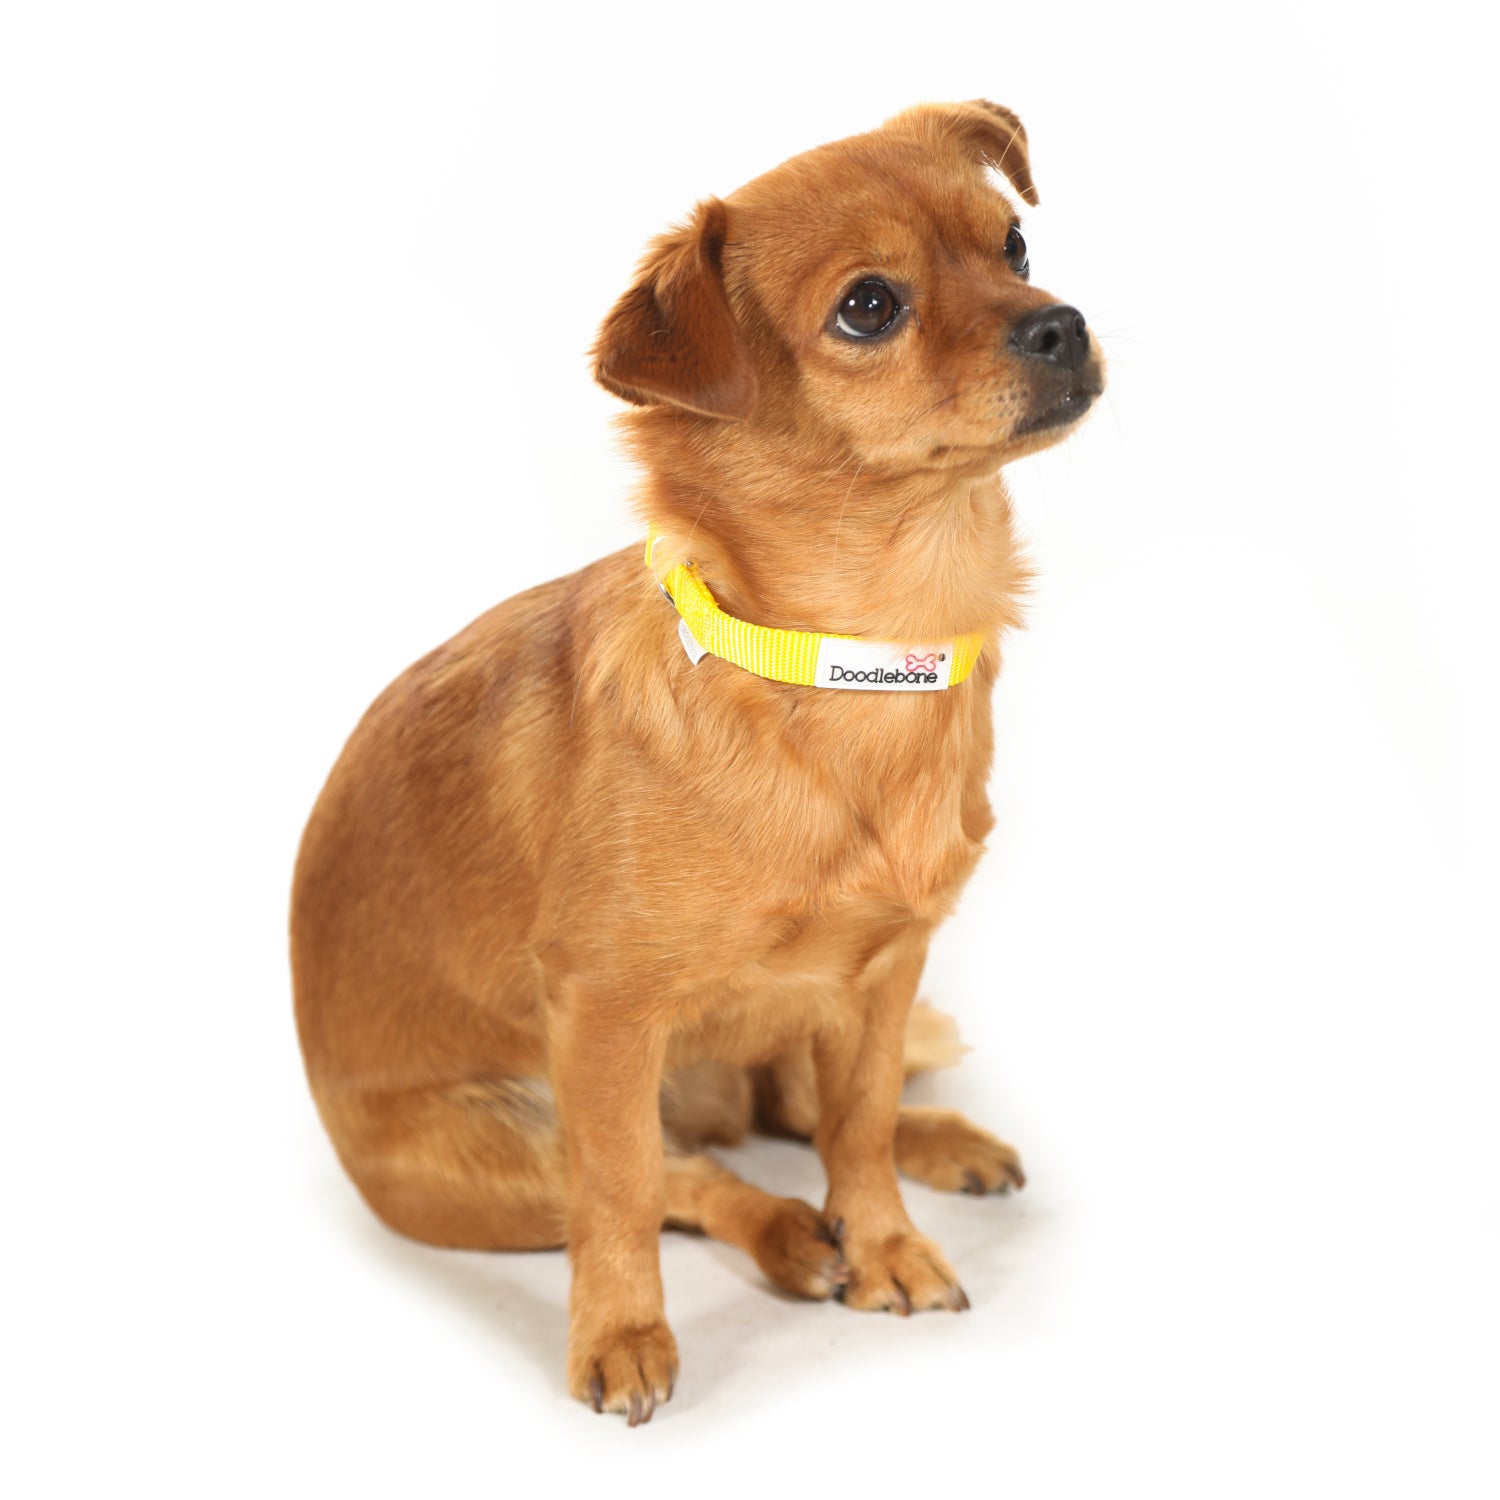 Doodlebone Originals Padded Dog Collar Fuchsia 3 Sizes